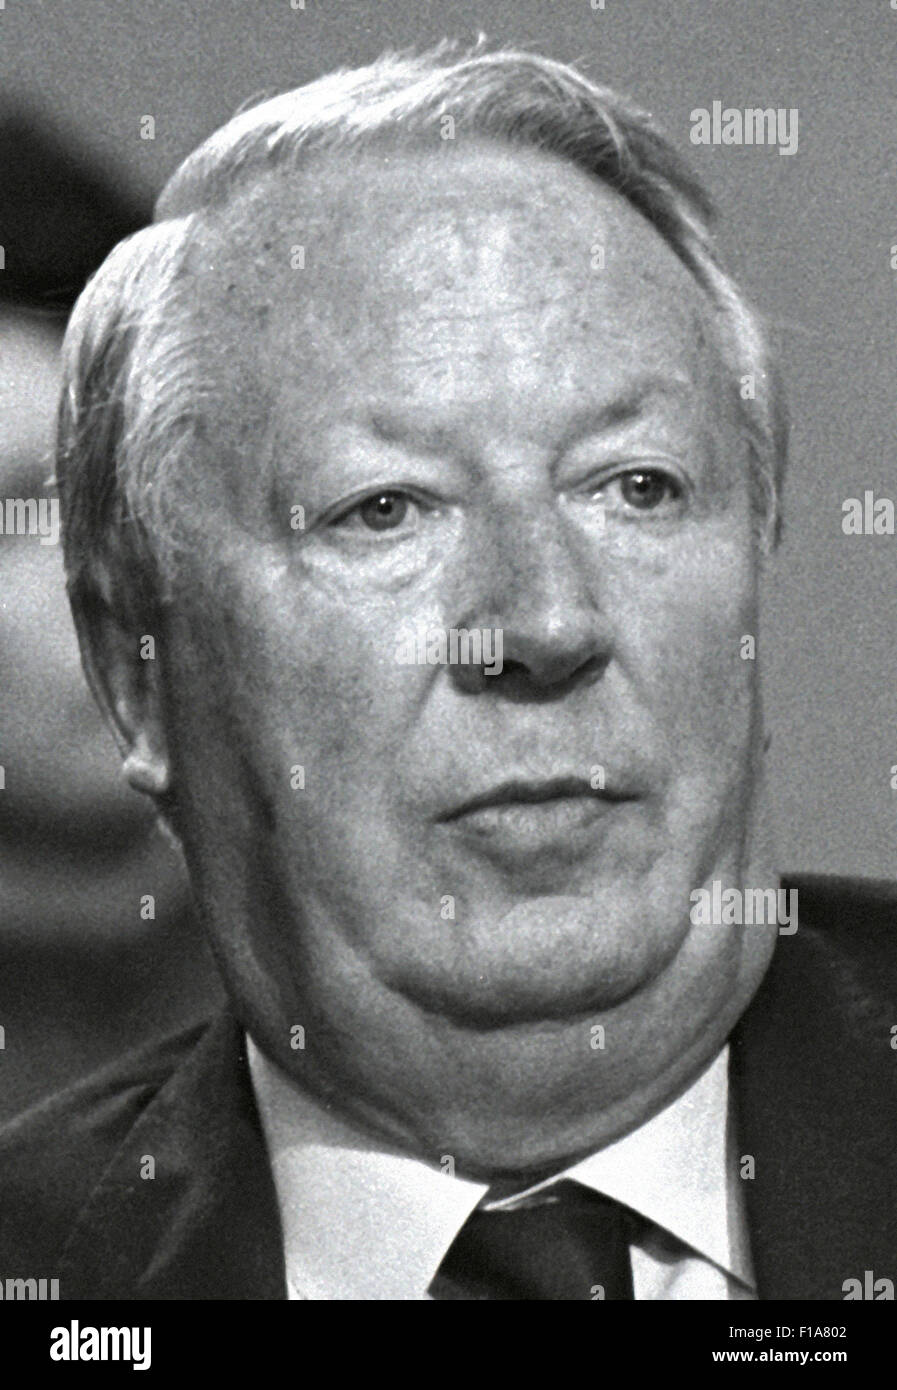 Edward Heath, Ted Heath, Sir Edward Heath Primo Ministro conservatore 1970 - 1974. Immagini esclusive da Daviid Cole dalla stampa Ritratto archivi di servizio. Foto Stock